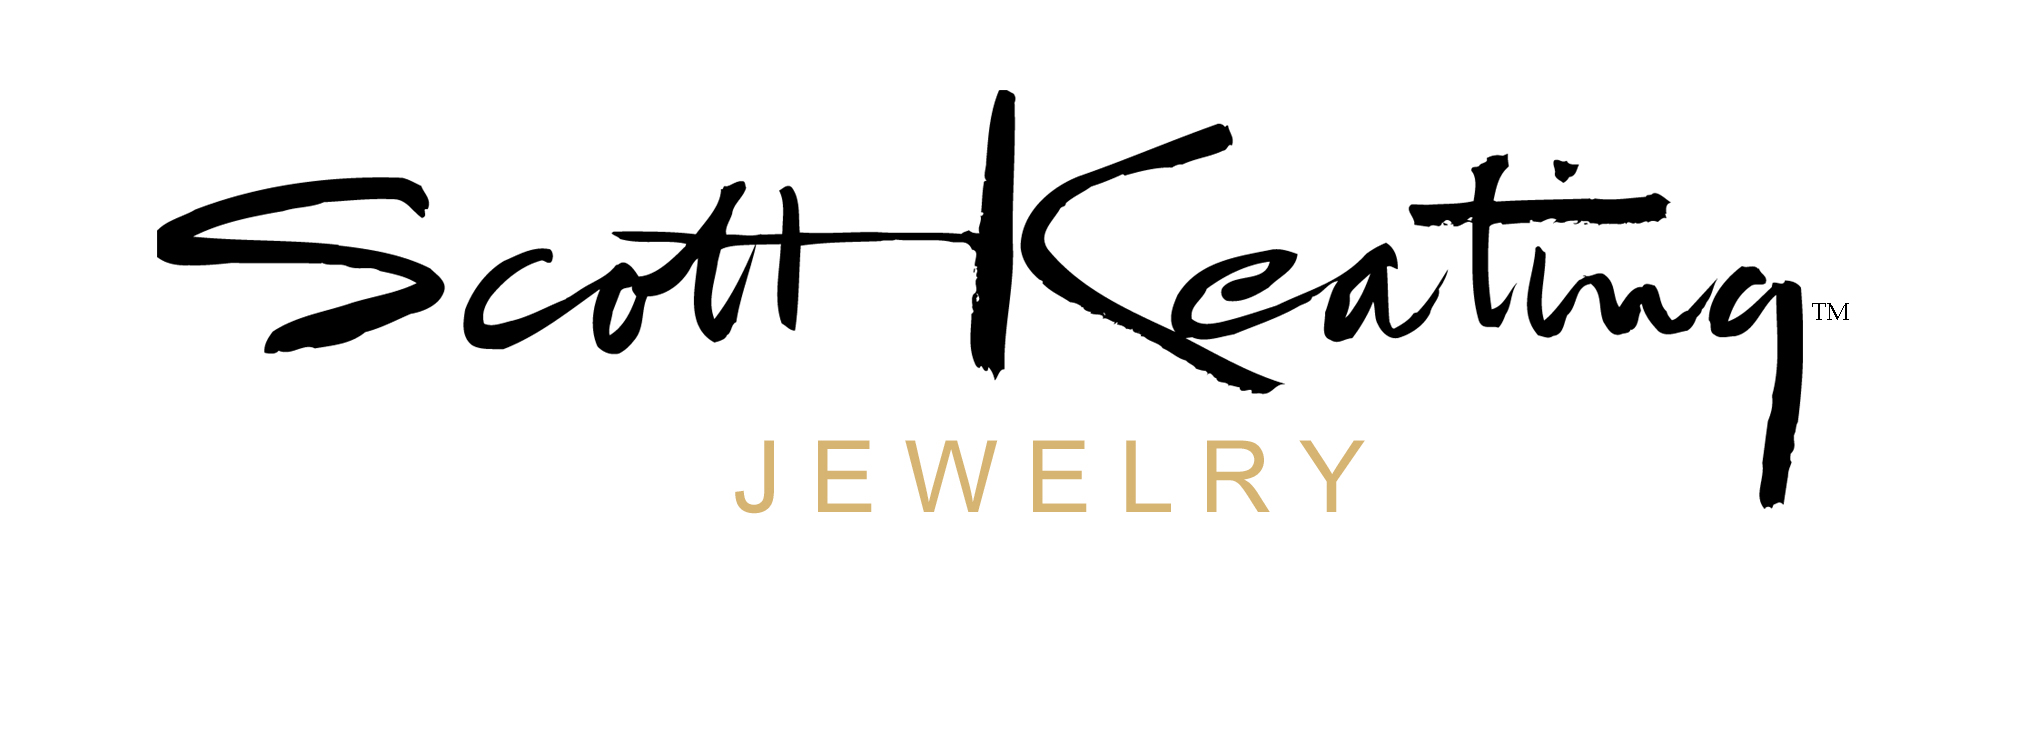 Scott Keating Jewelry